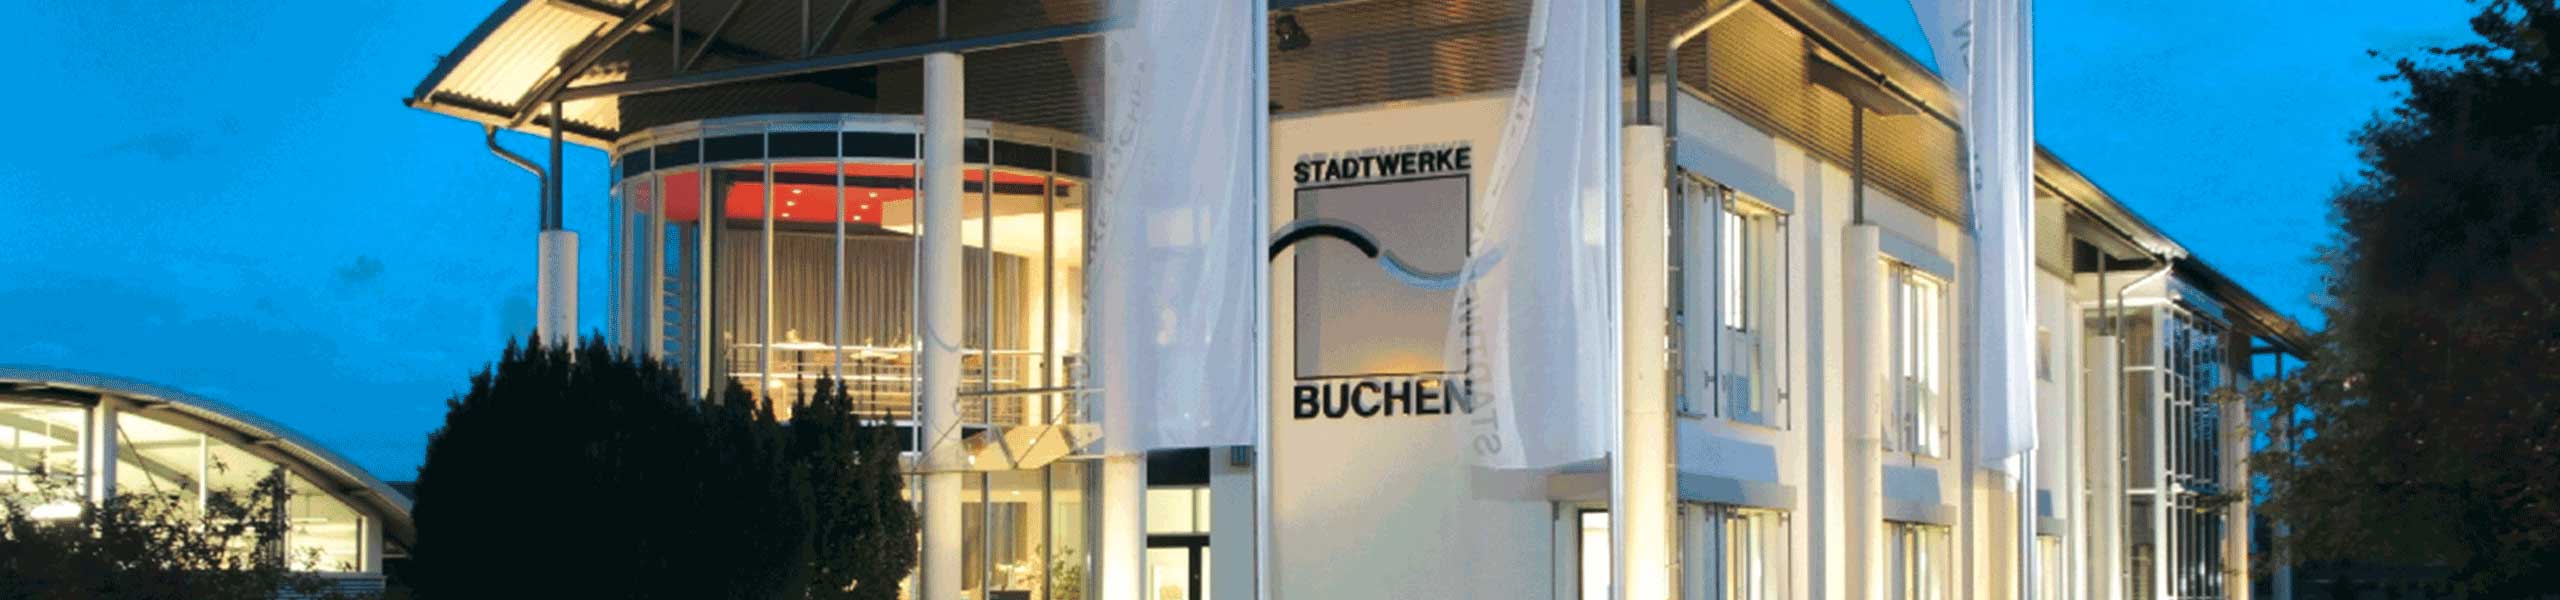 Stadtwerke Buchen GmbH & Co KG - Downloads